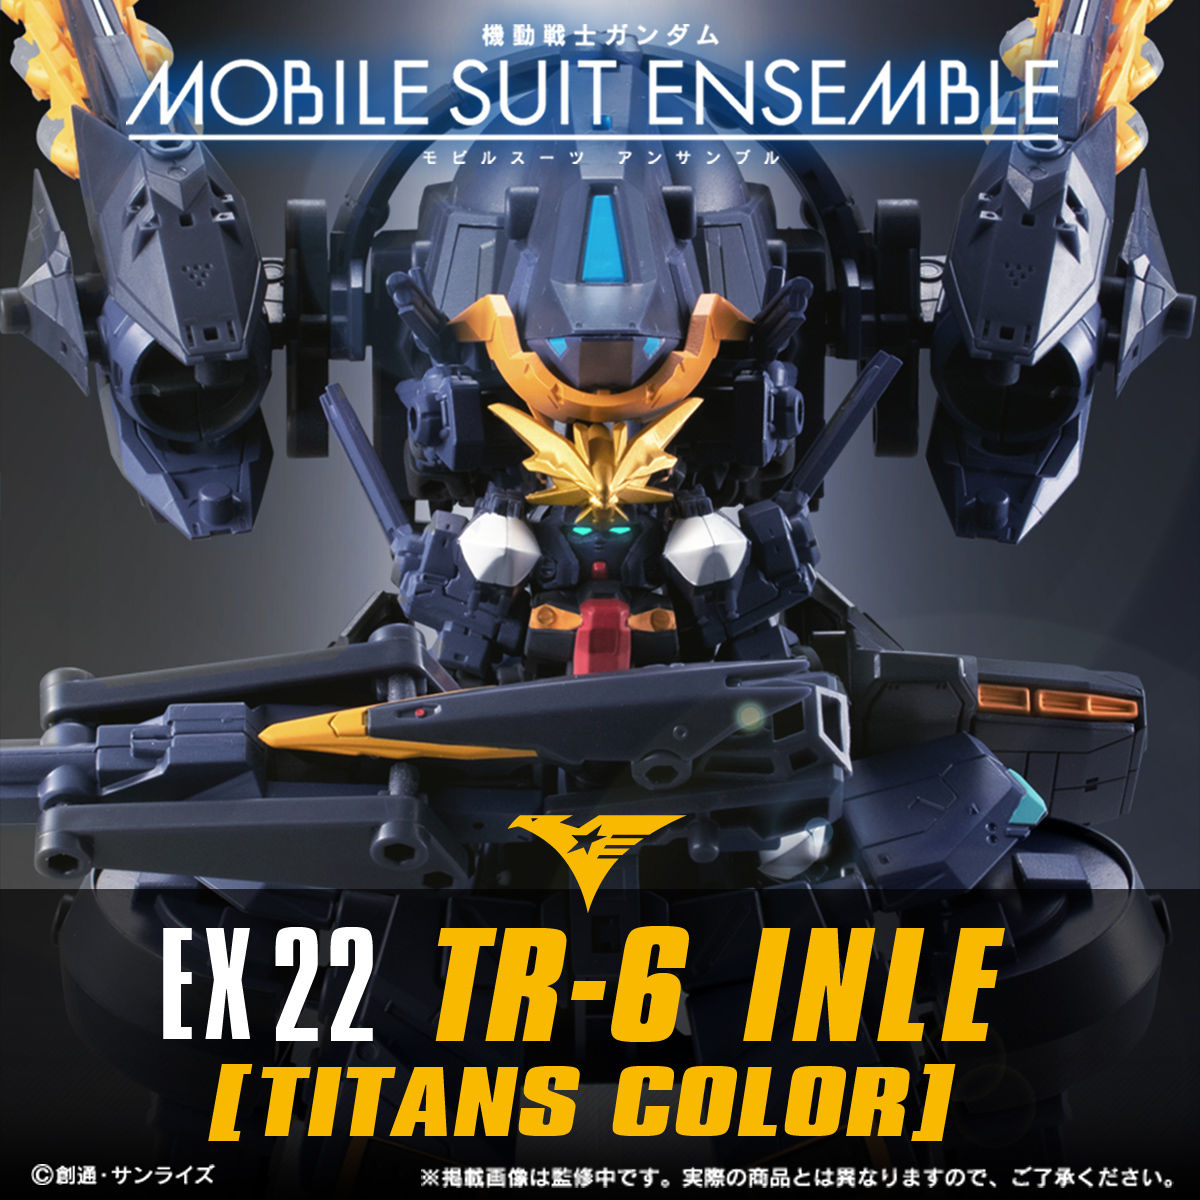 MS Ensemble EX22 RX-124 Gundam TR-6[Inle](Titans color)